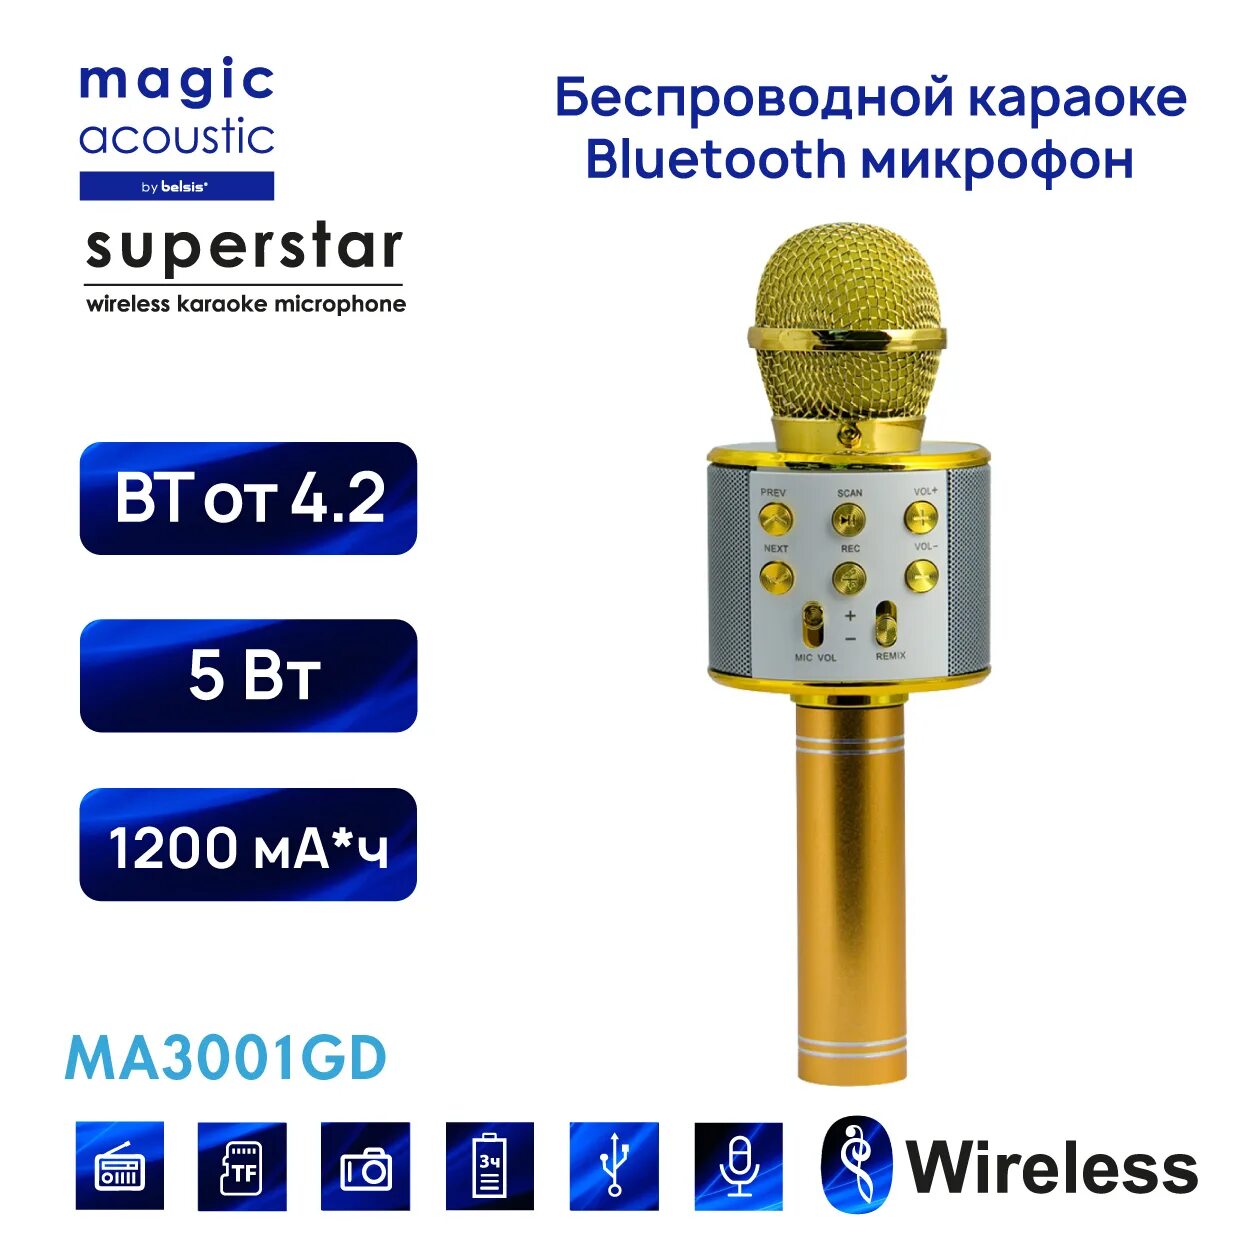 Bluetooth magic. Микрофон для караоке Belsis ma3001be, Bluetooth, fm, MICROSD, цвет золото. Superstar караоке микрофон ma3001. Микрофон Magic Acoustic Superstar. Magic Acoustic ma3001gd.